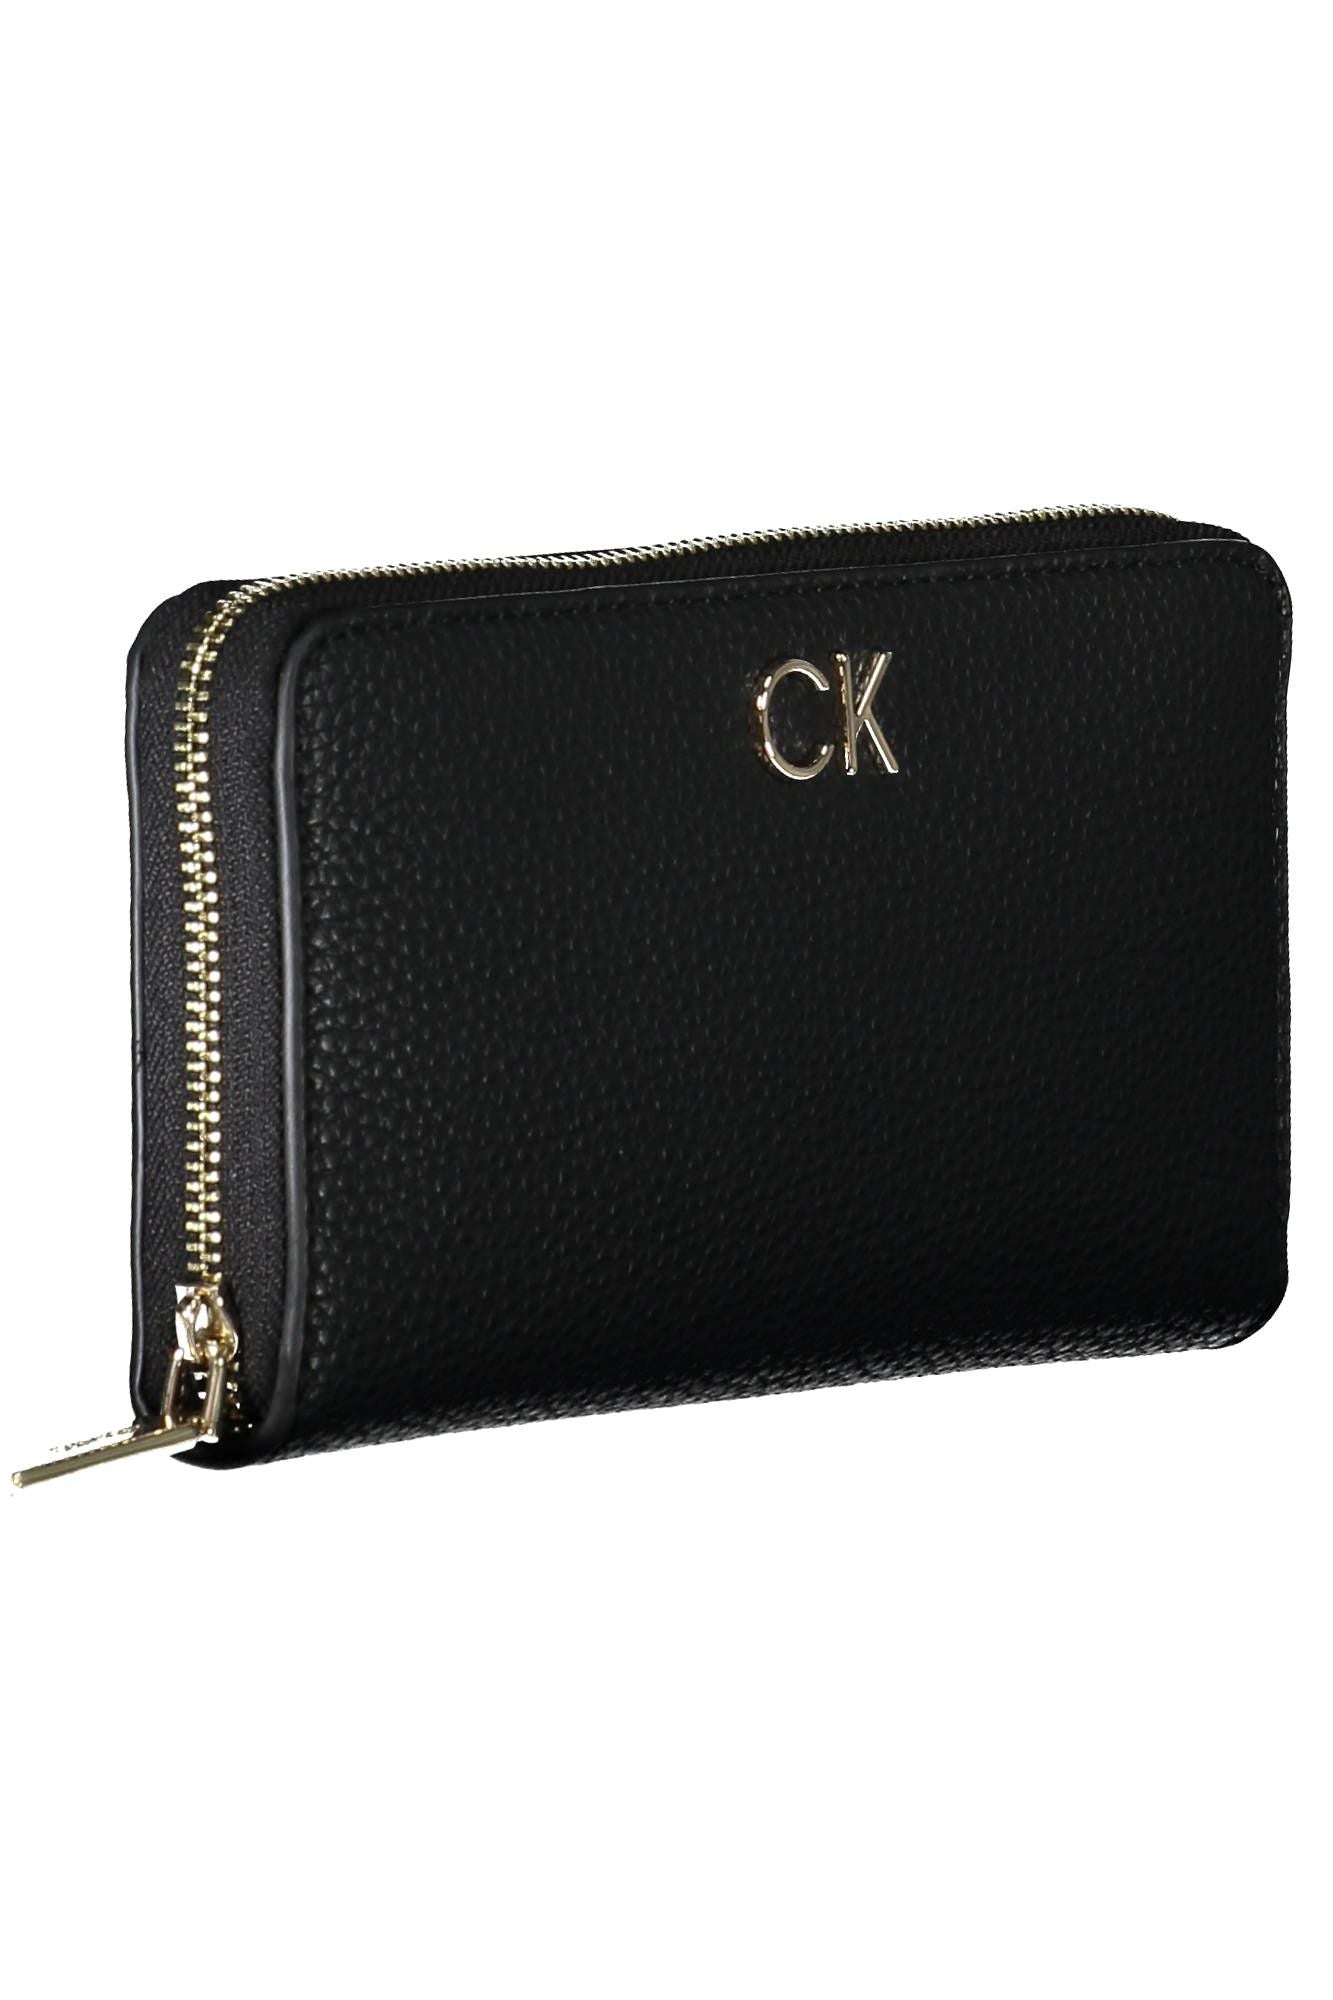 Elegant Black Five-Compartment Wallet